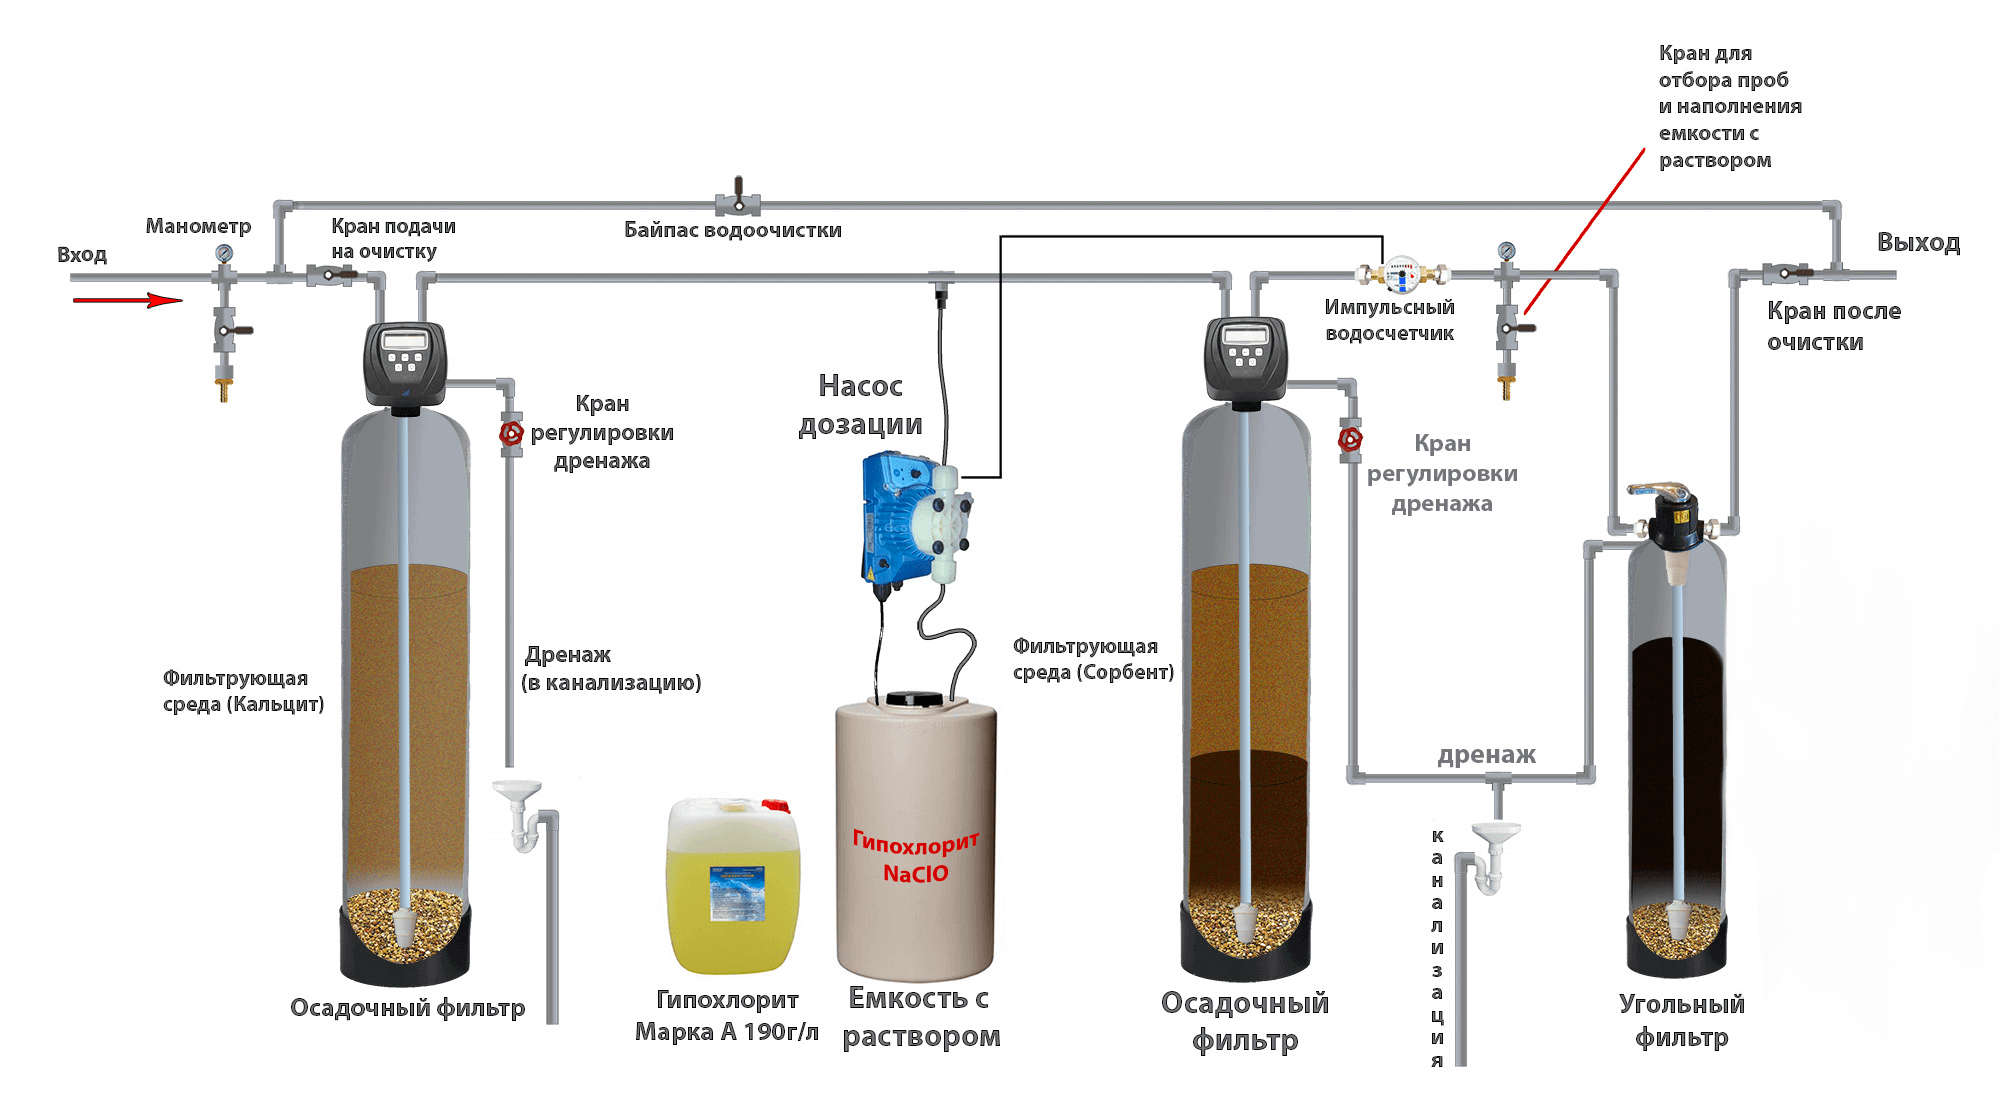 Обзор специальной химии для очистки воды в бассейне от железа